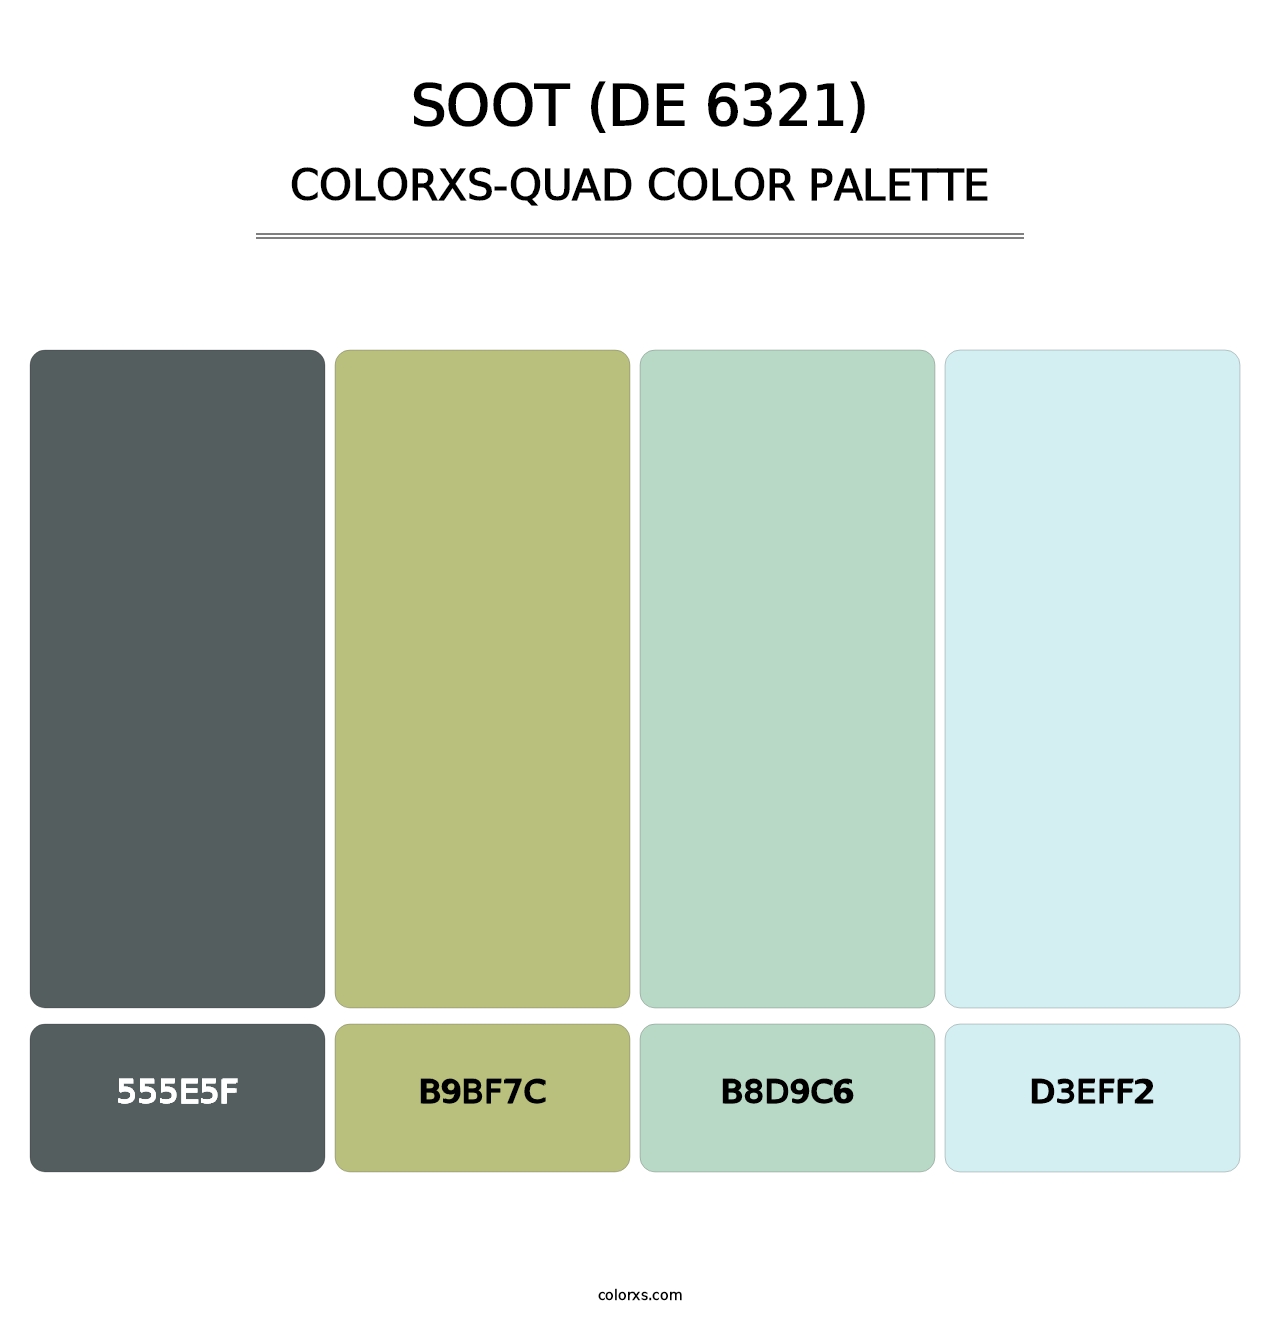 Soot (DE 6321) - Colorxs Quad Palette